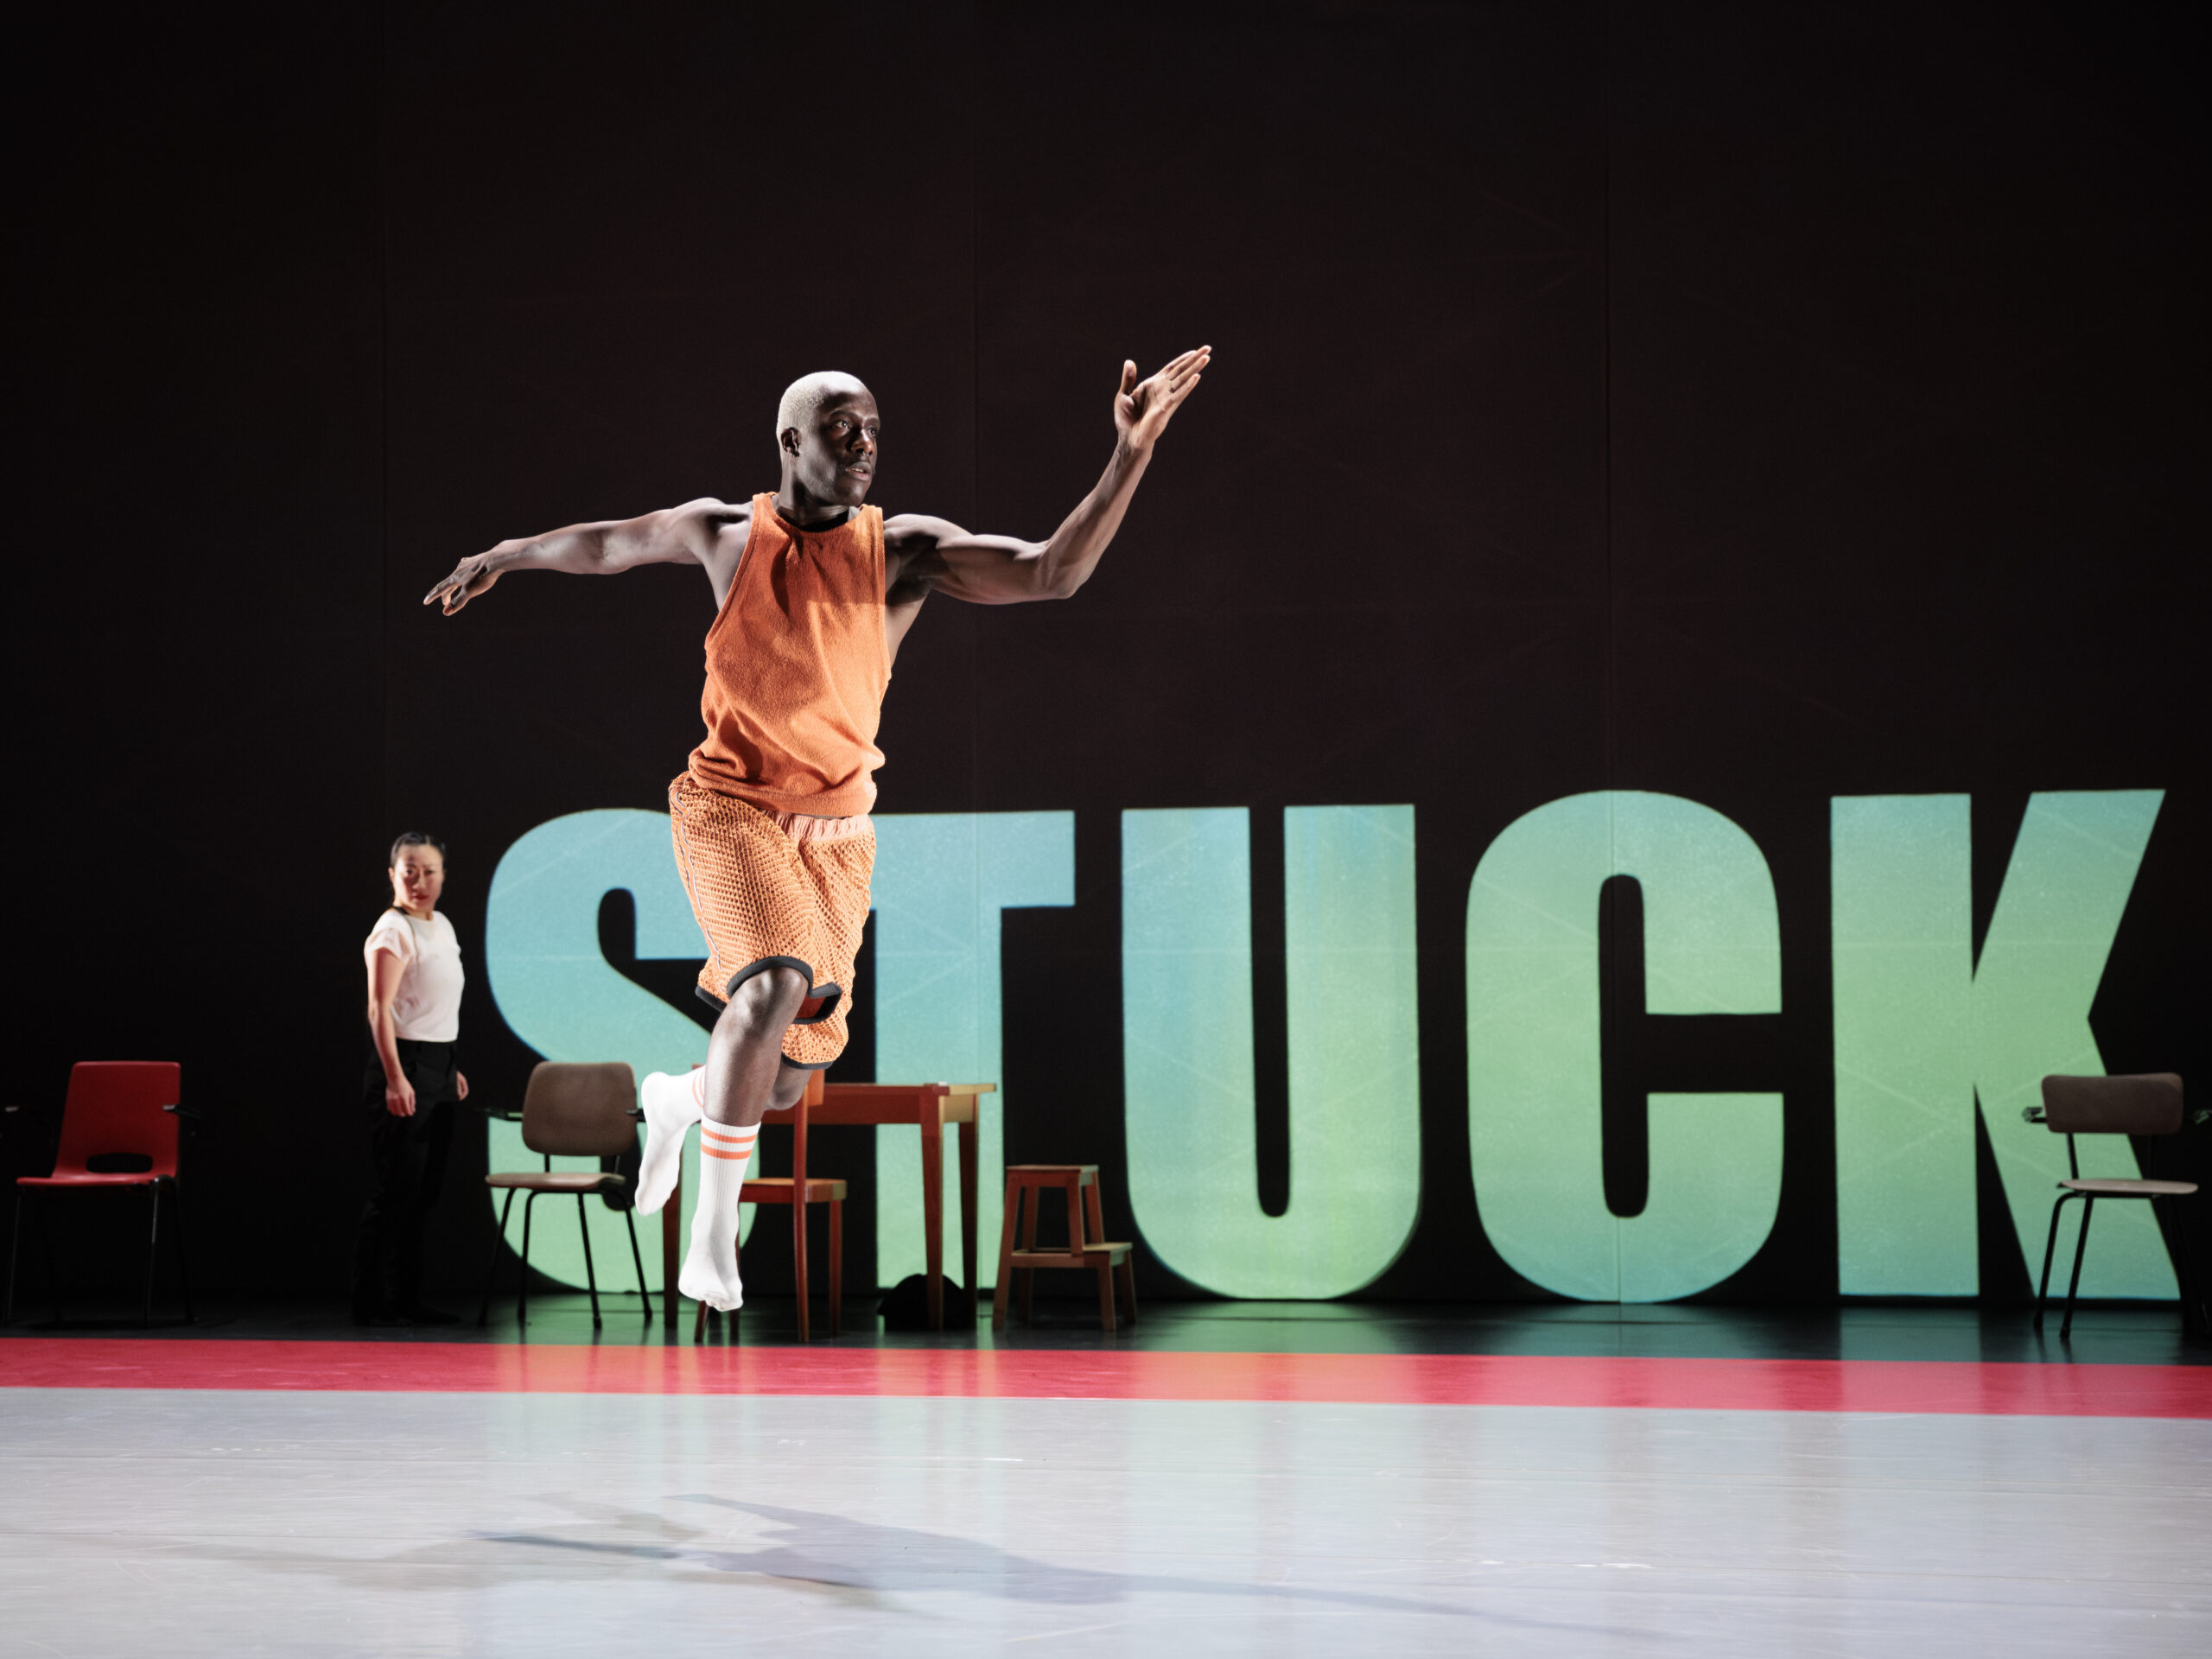 Een danser die met zijn armen wijd over het podium springt met het woord 'stuck' op de achtergrond